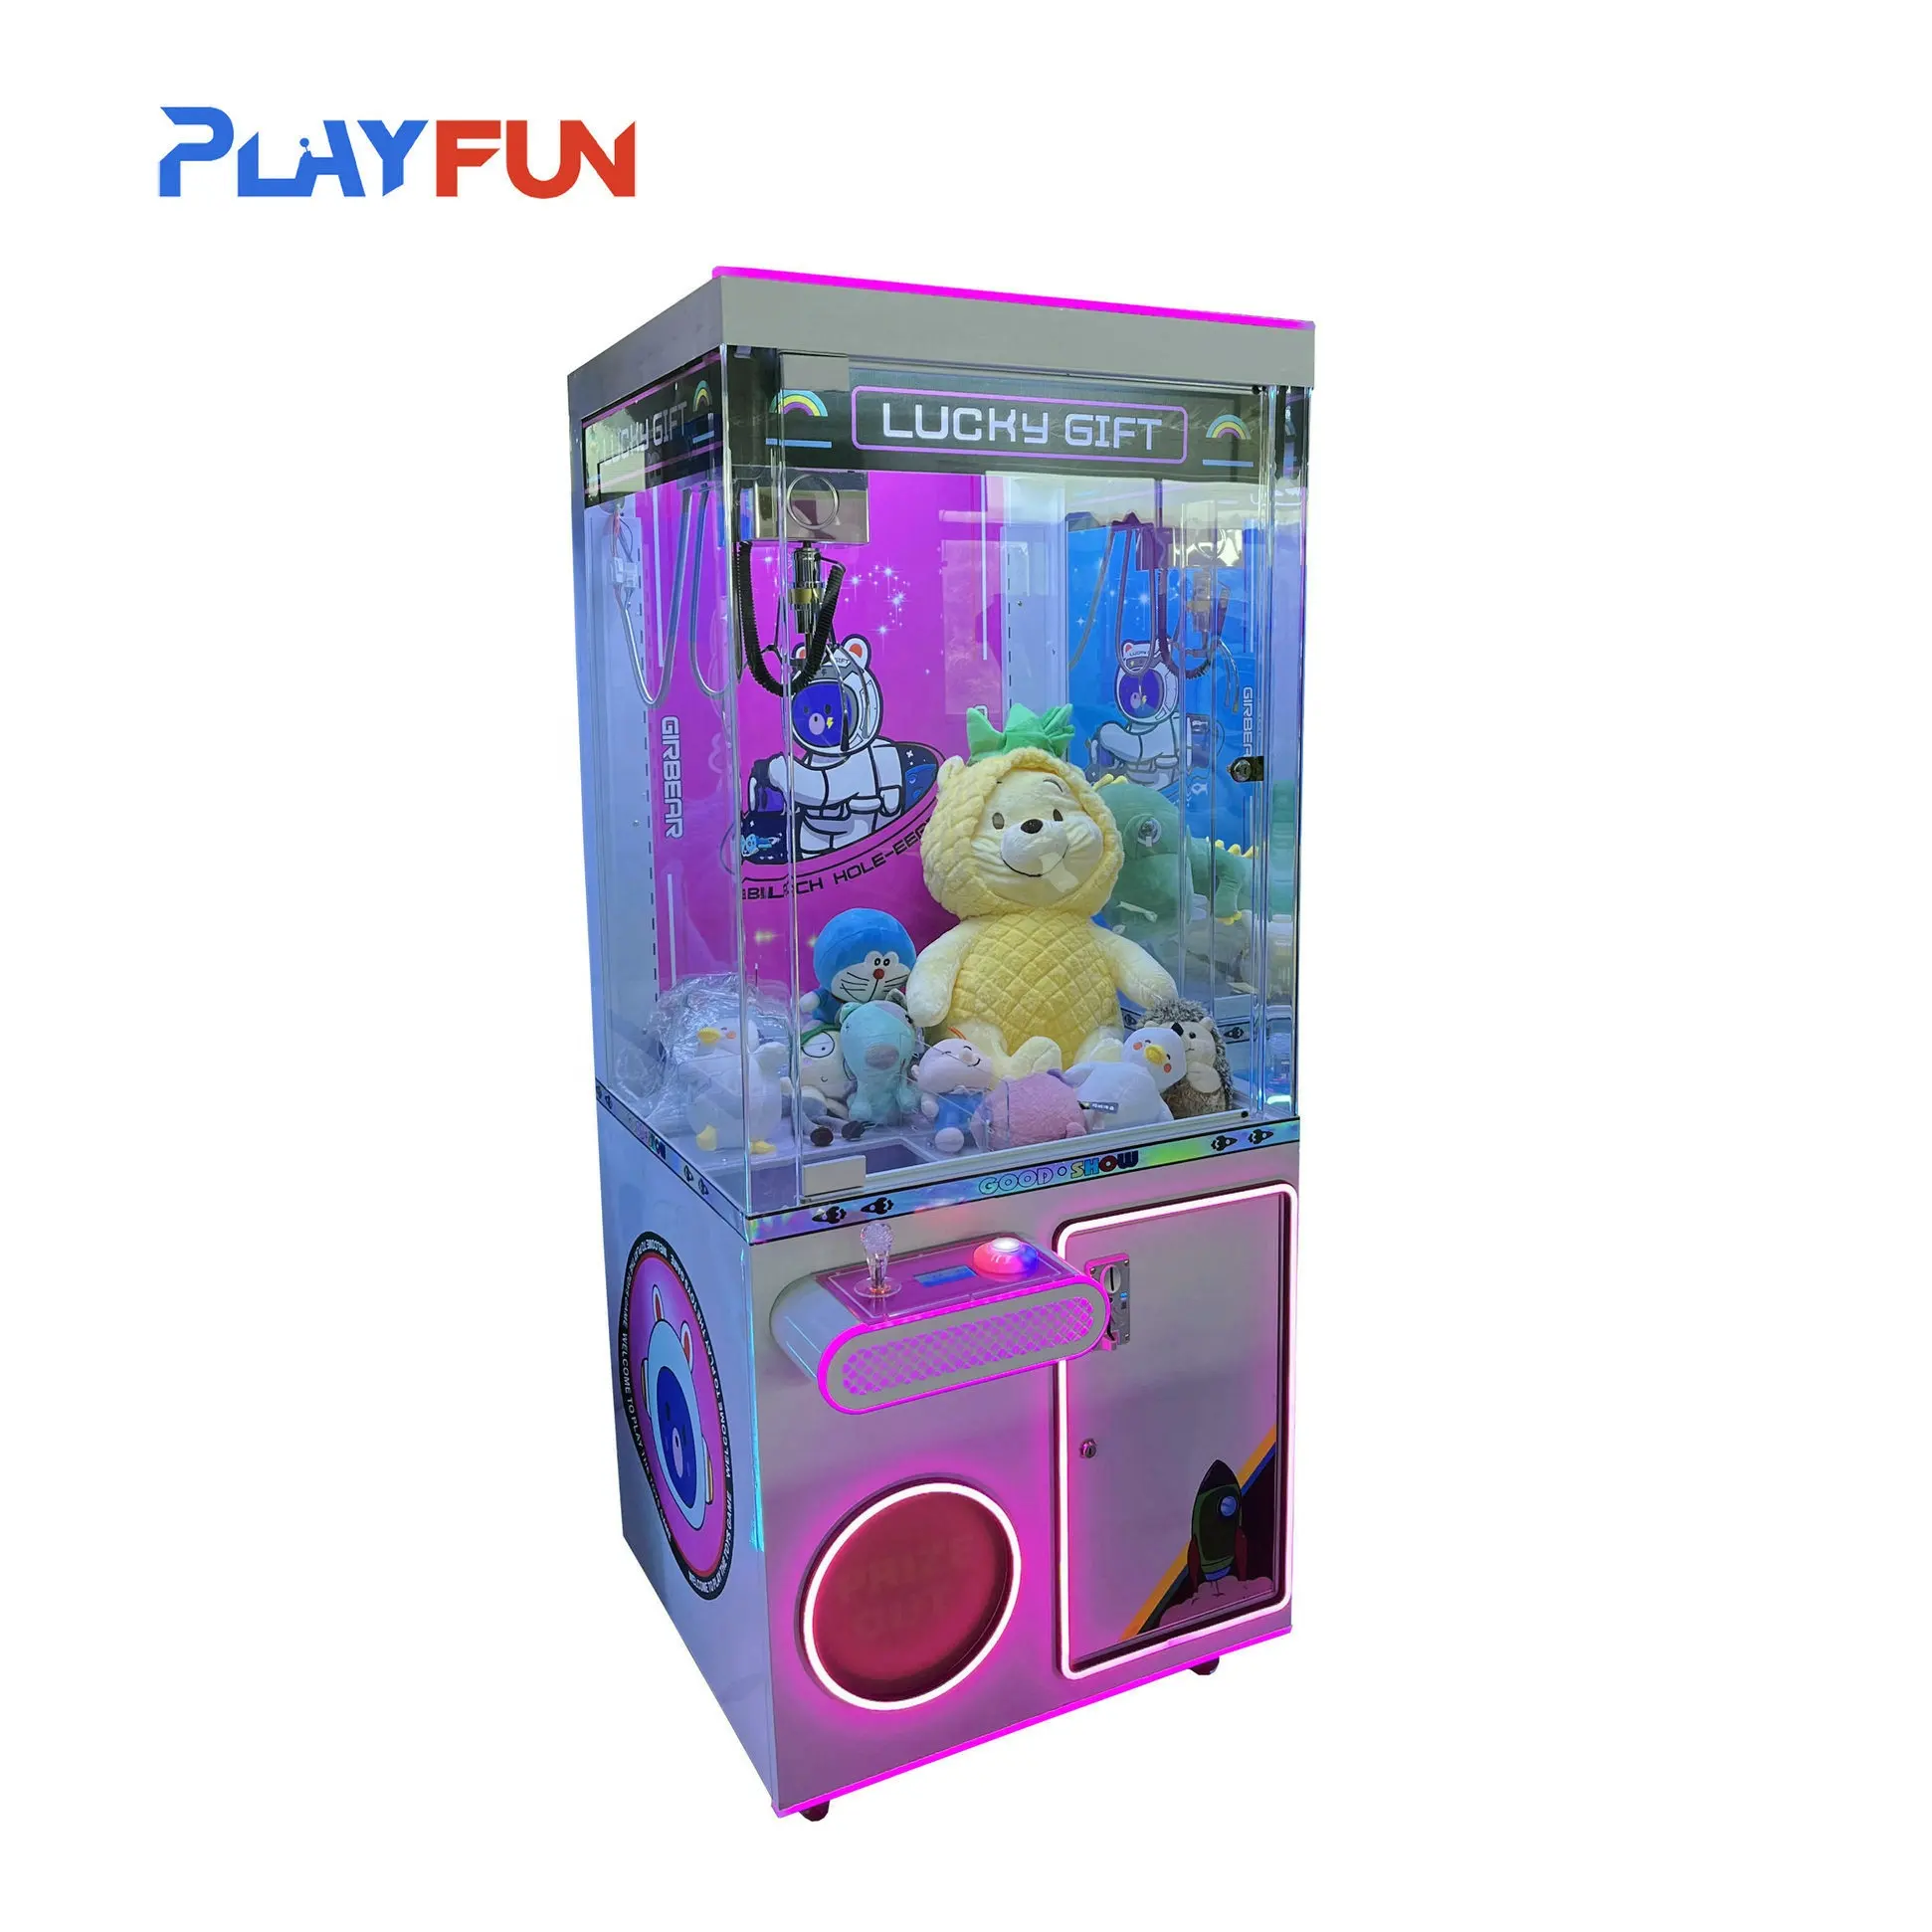 PlayFun sıcak satış şanslı hediye sikke işletilen peluş oyuncak bebek Arcade pençeli vinç satılık makine